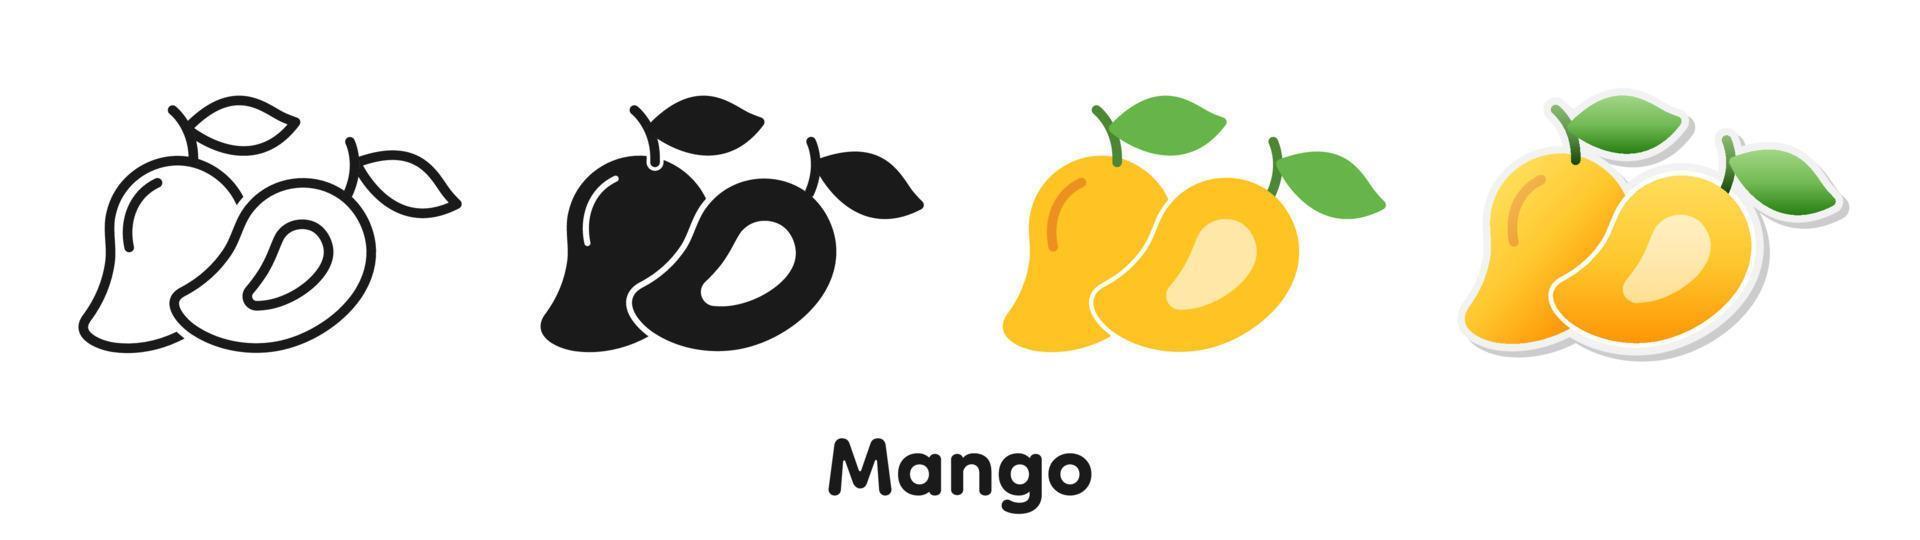 conjunto de iconos vectoriales de mango. vector